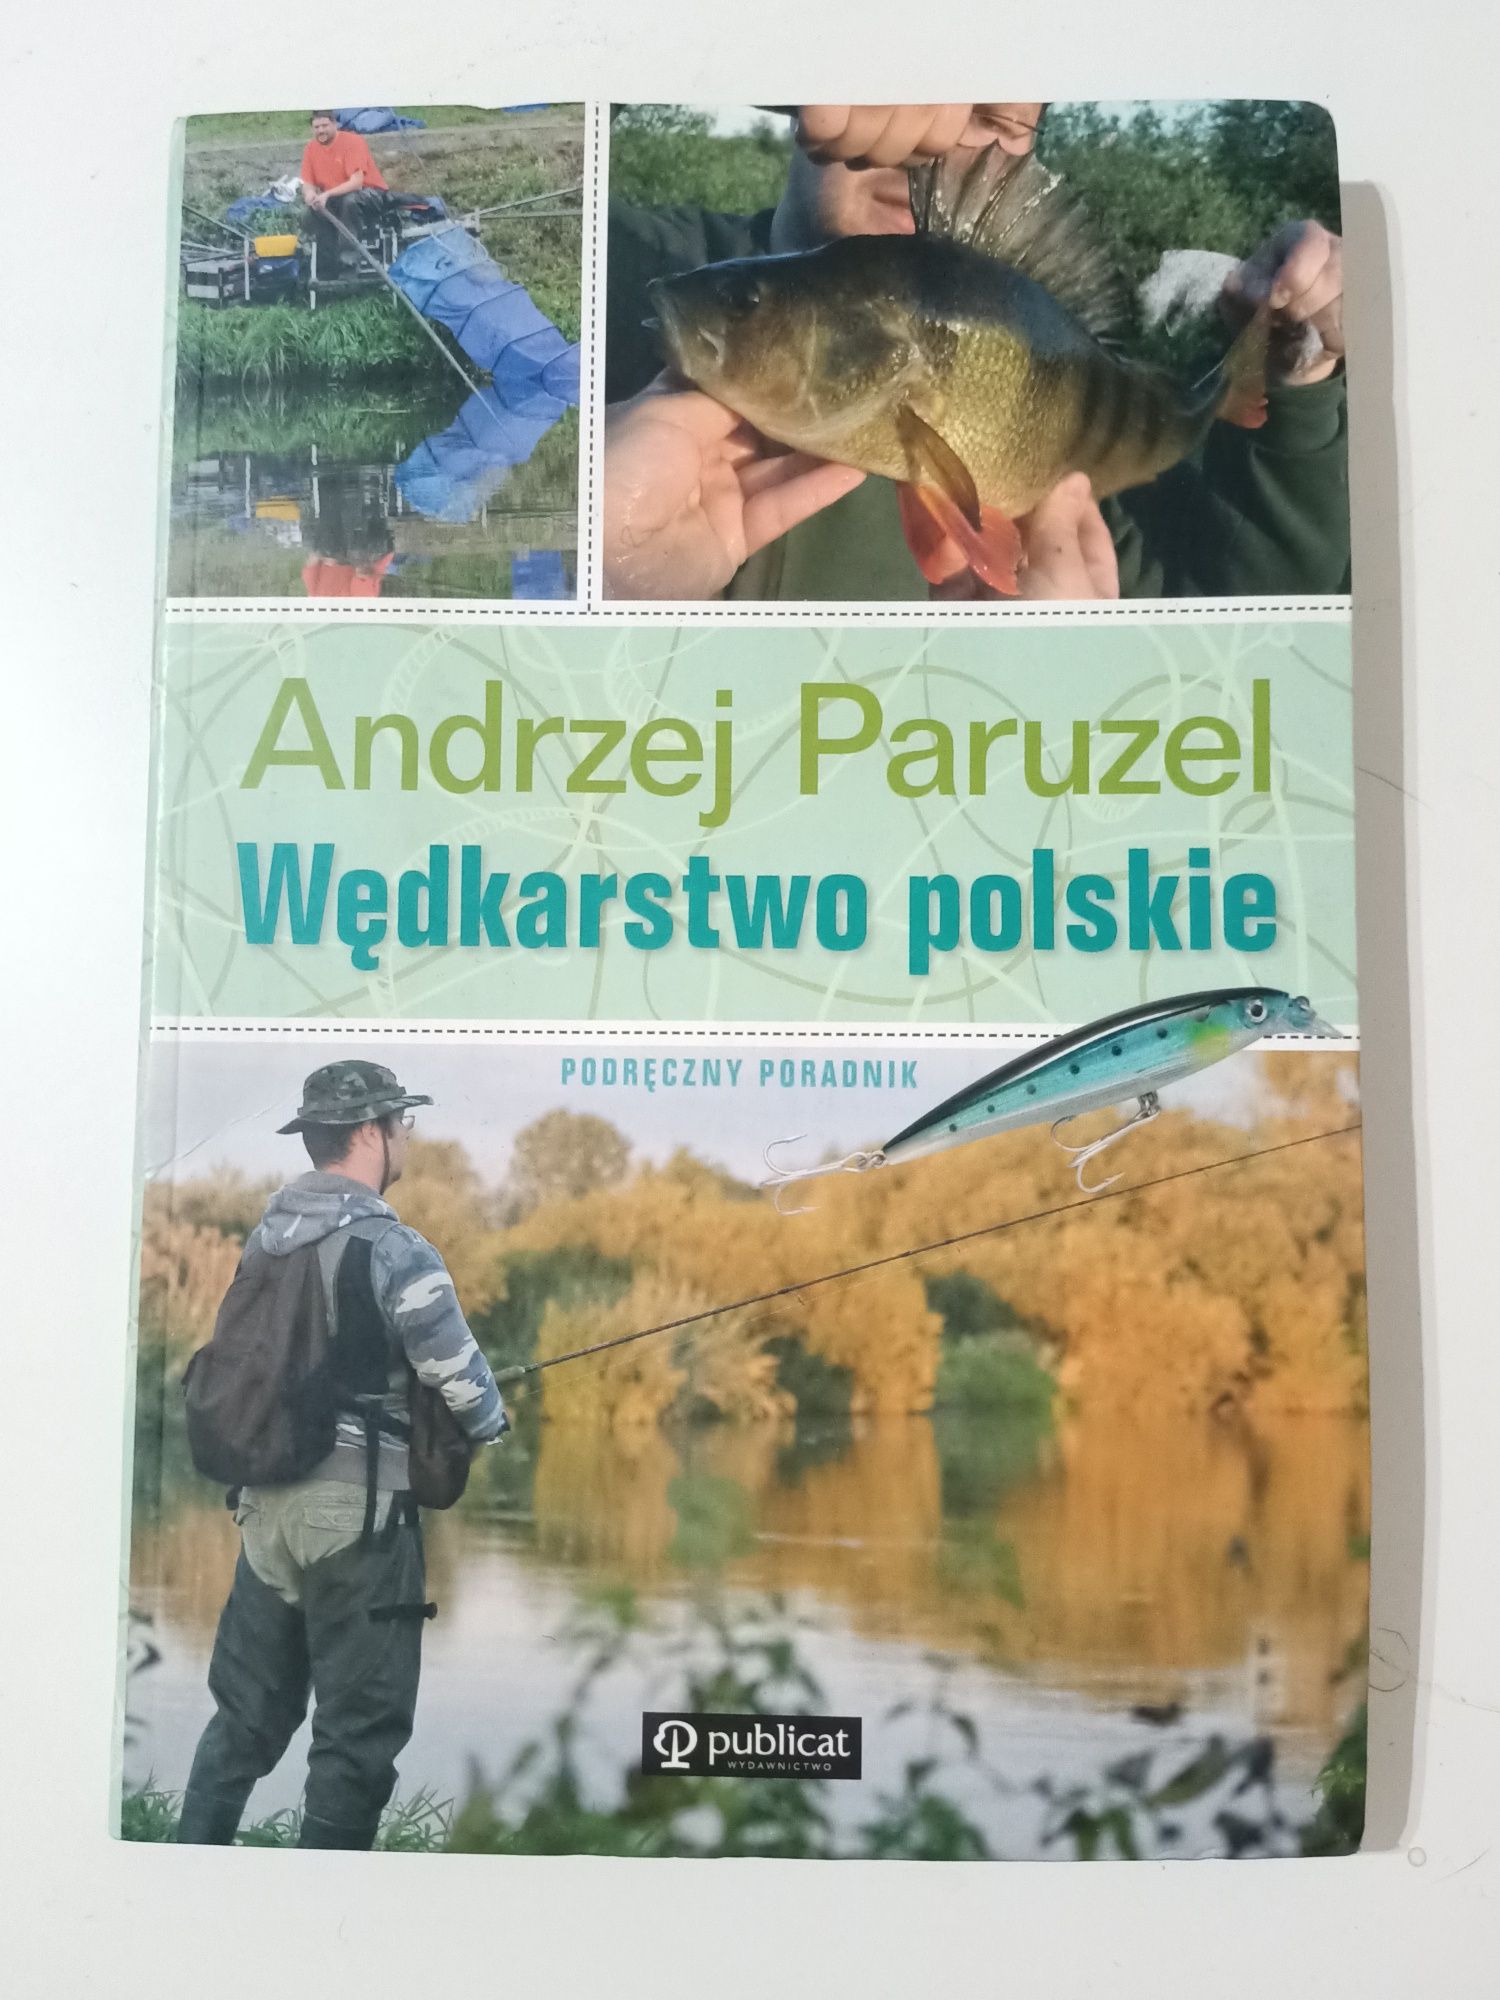 Książka o polskim wędkarstwie